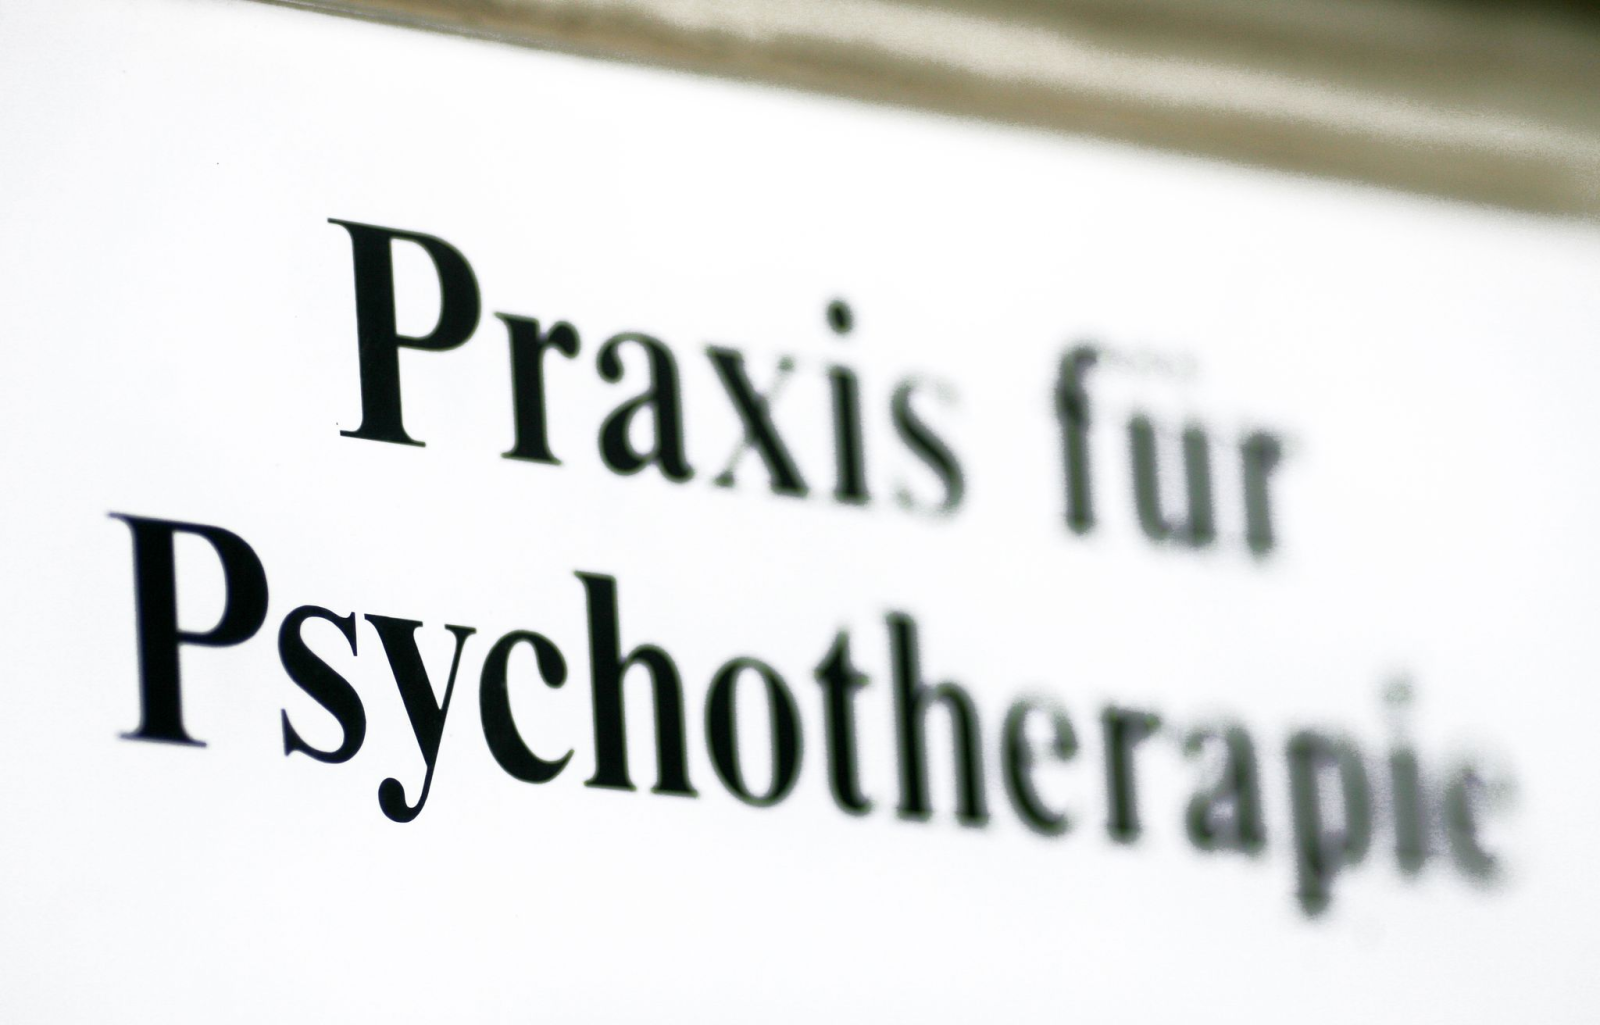 Ein Schild einer Praxis für Psychotherapie.